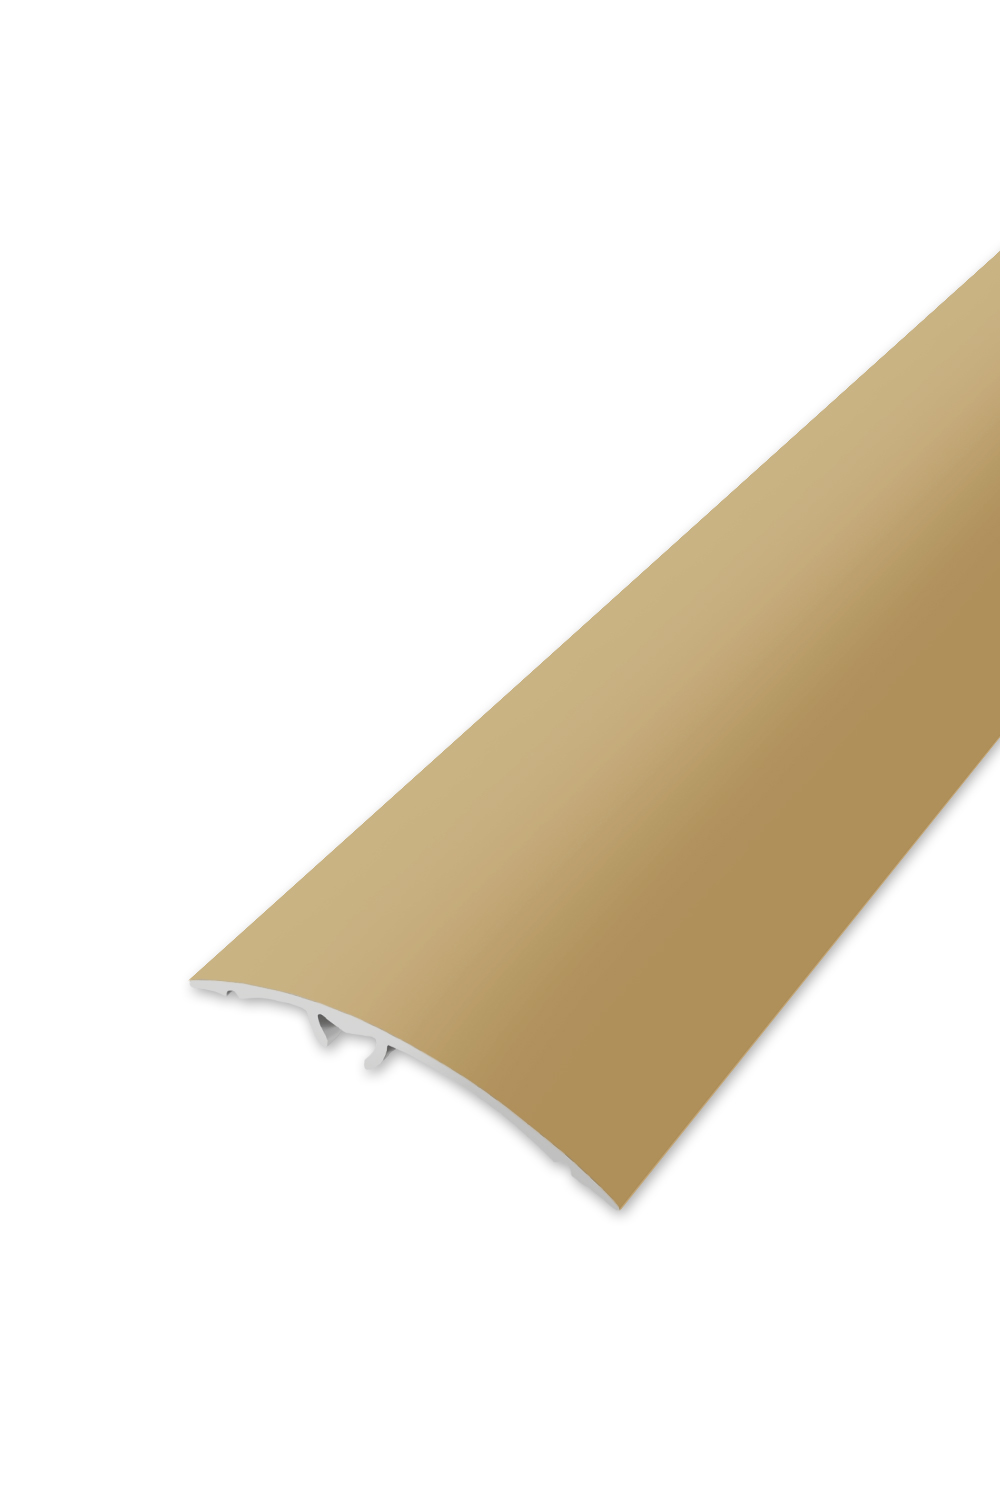 Přechodová lišta WELL 50 - Zlatá 270 cm